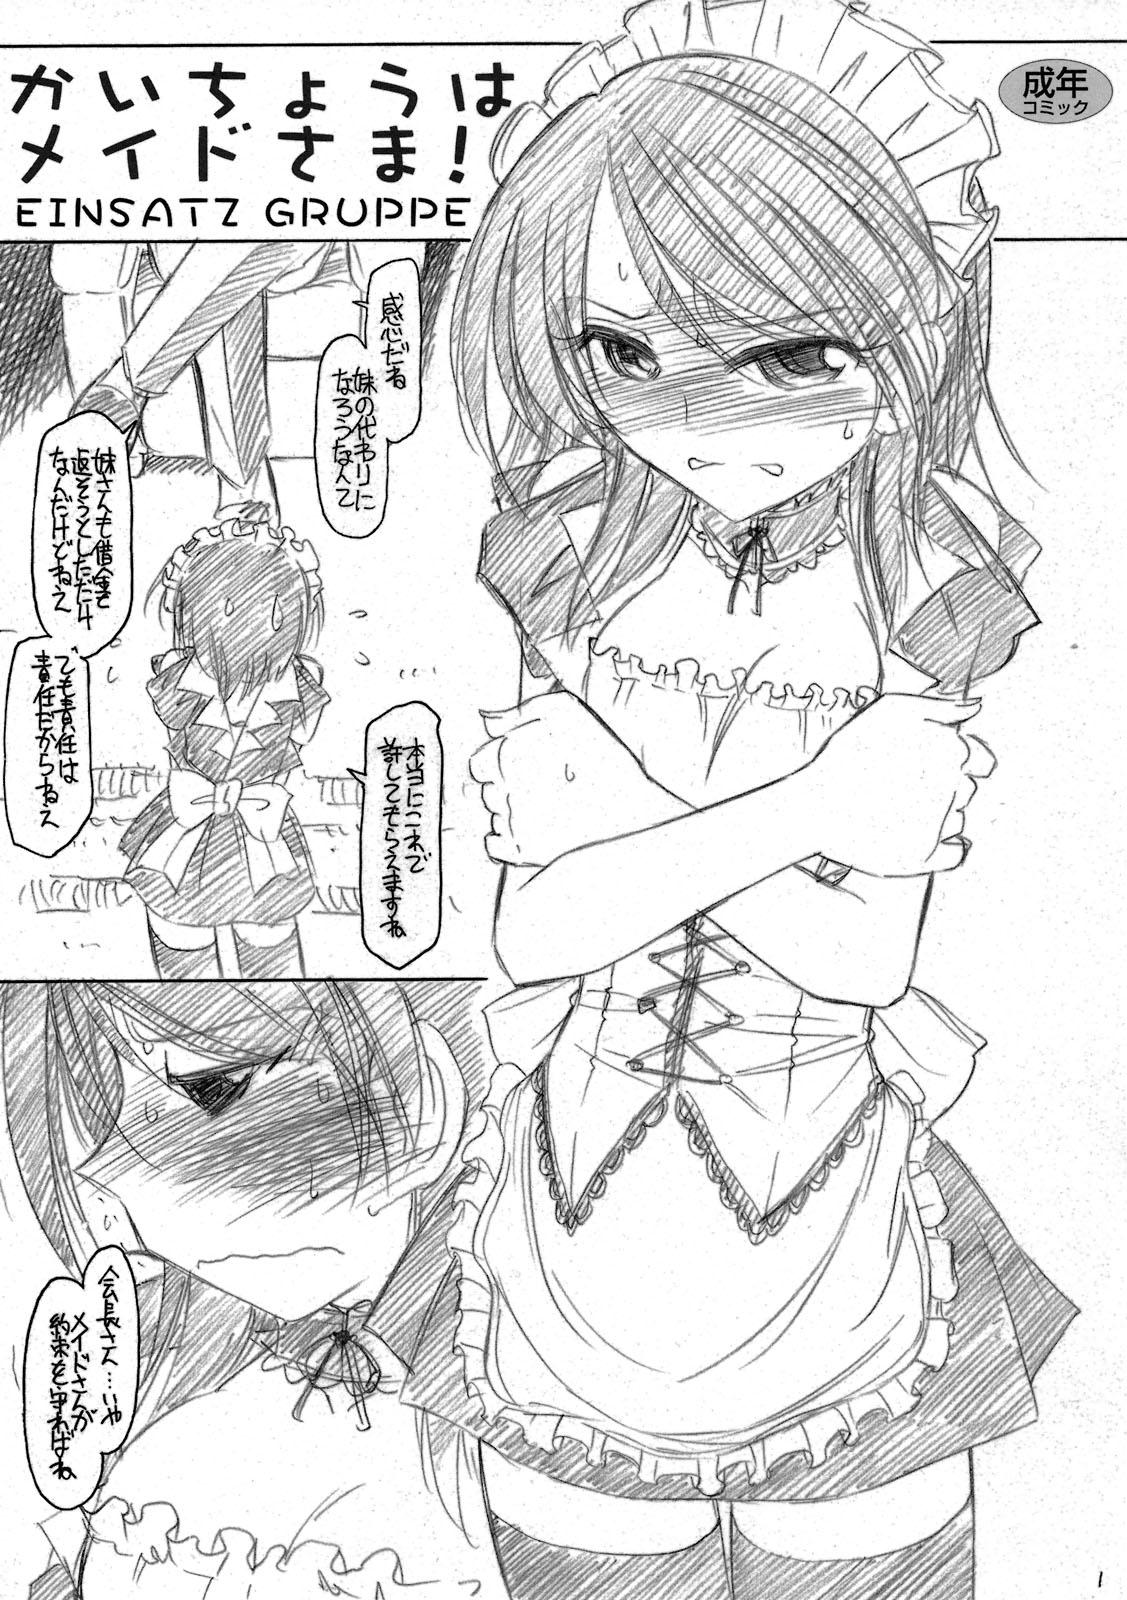 Pasivo Kaichou wa Maid sama! - Kaichou wa maid sama Fucking Girls - Page 1